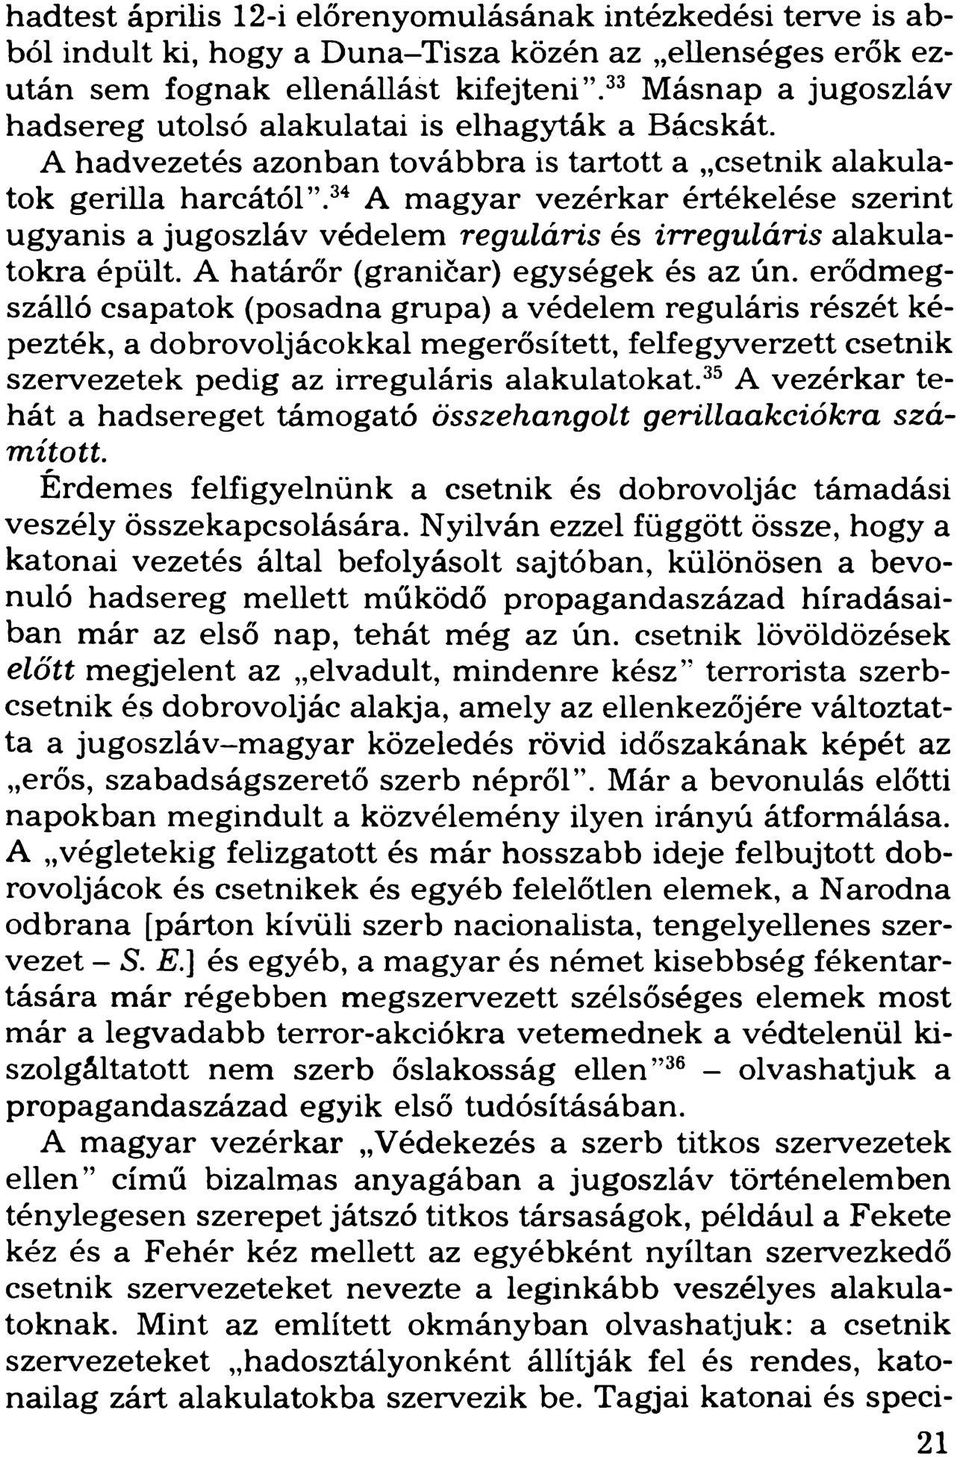 34 A magyar vezérkar értékelése szerint ugyanis a jugoszláv védelem reguláris és irreguláris alakulatokra épült. A határőr (graničar) egységek és az ún.